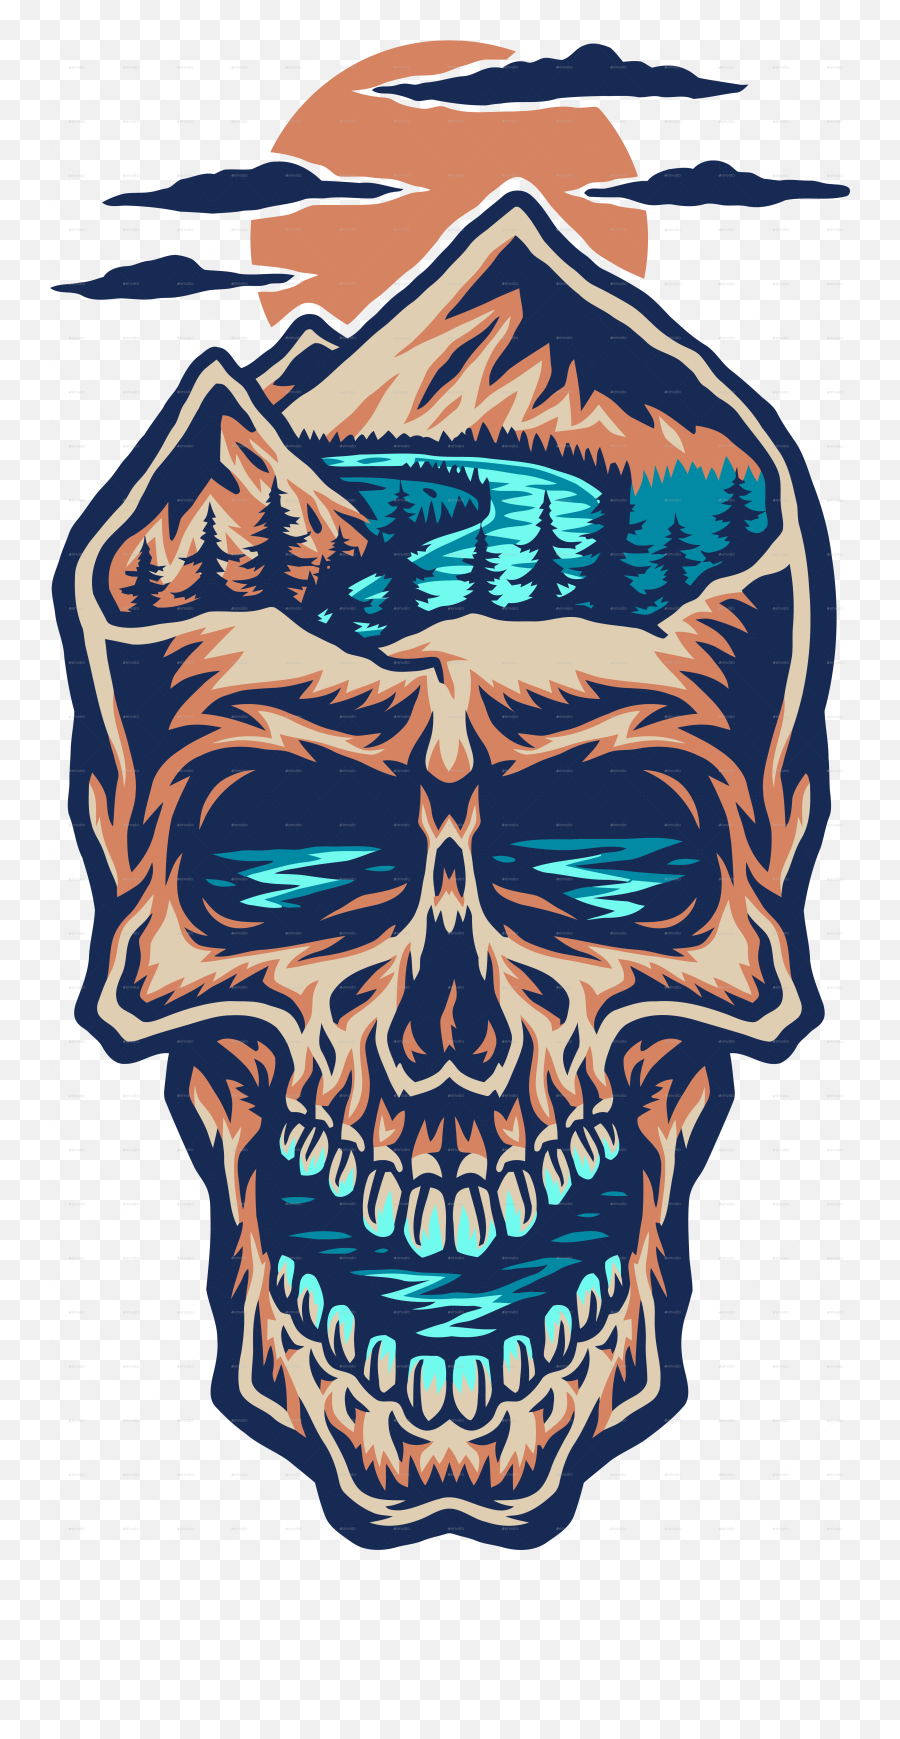 Mountain Head Skull Eps Vector Skull Vector File - Skull Poison Bottle Emoji,Mountain Transparent Background